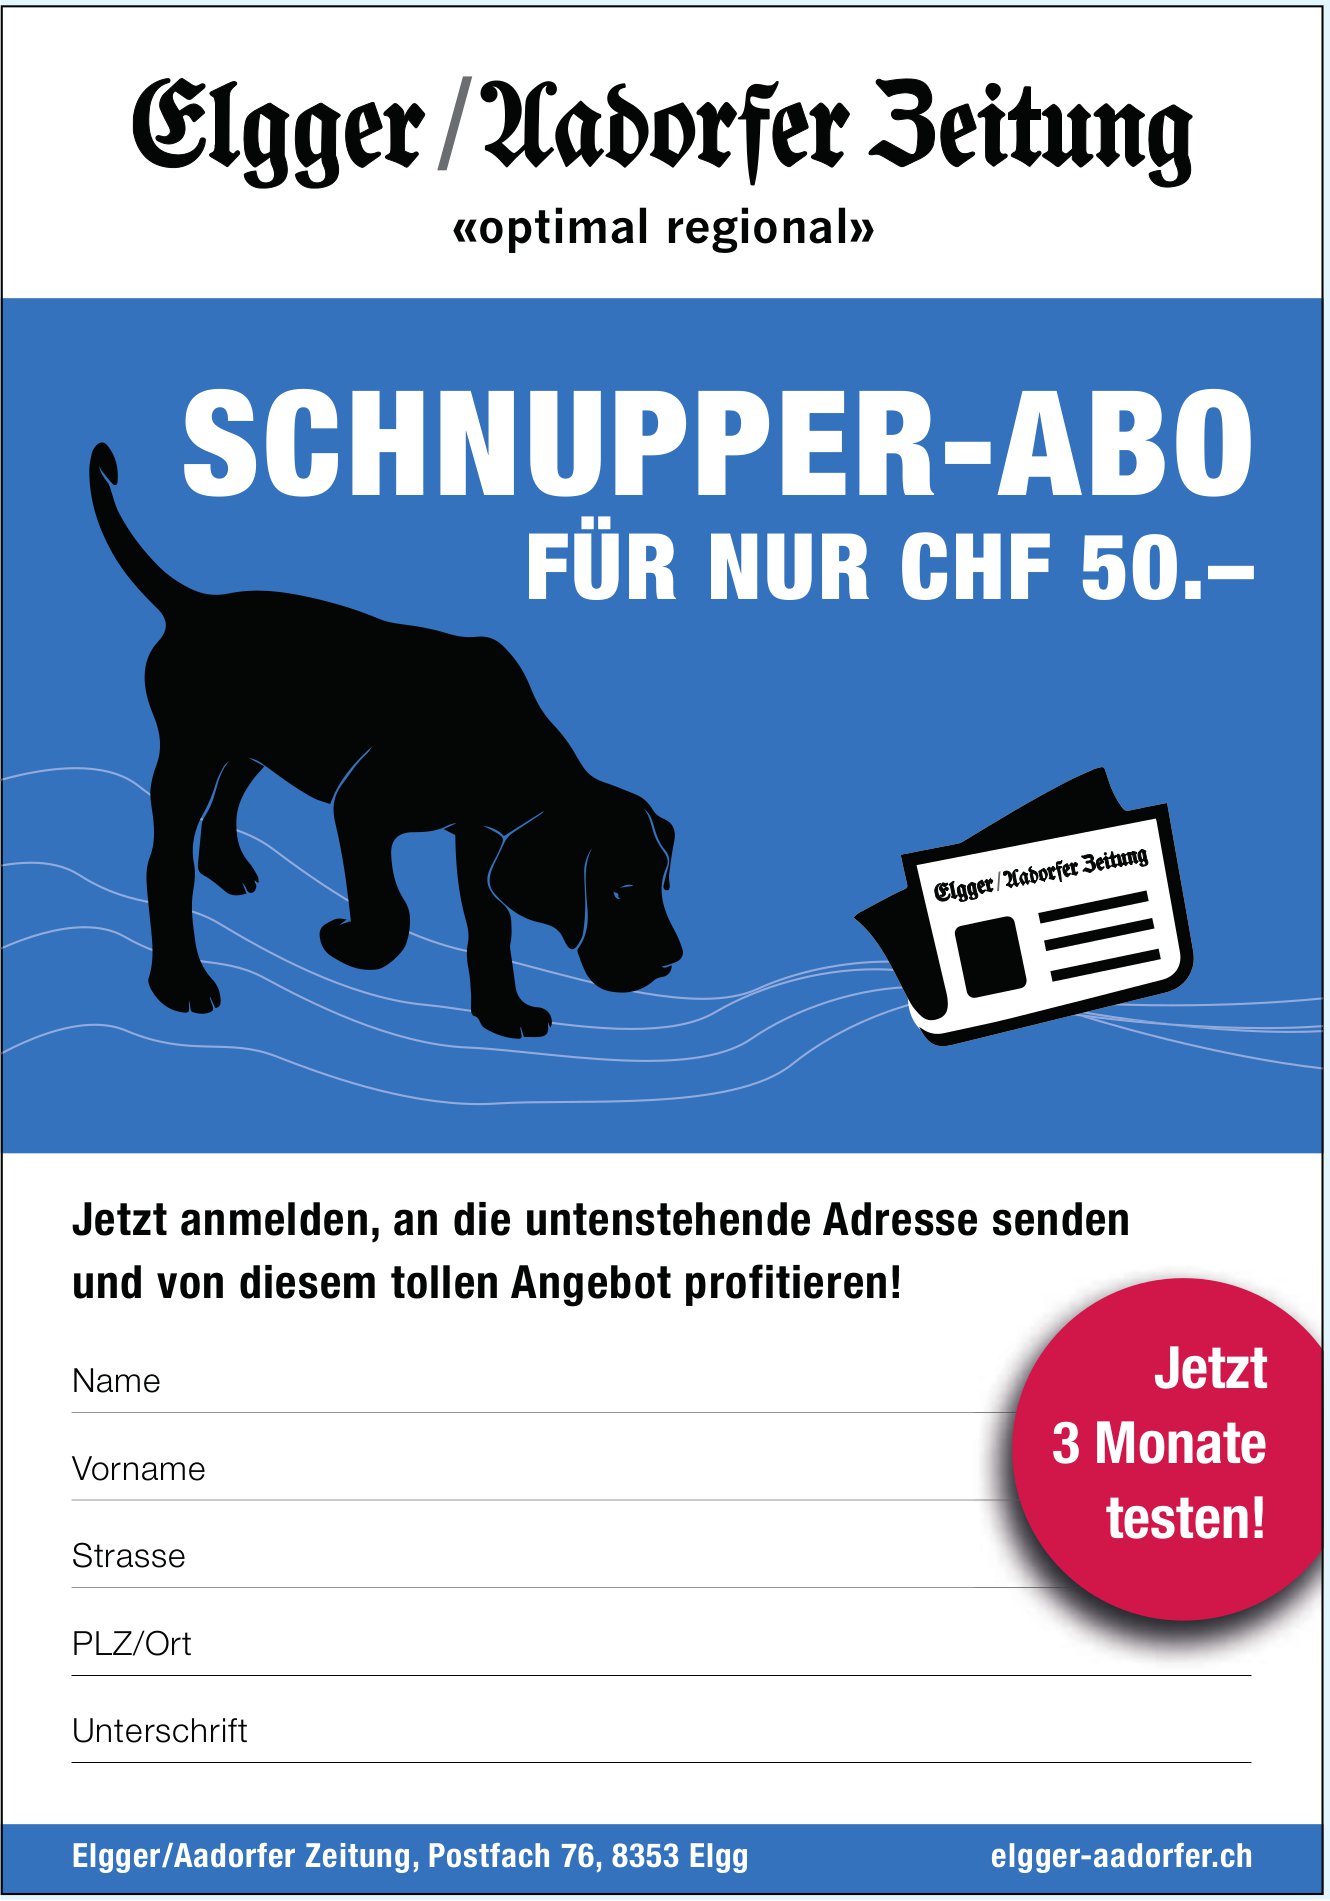 Elgger / Aadorfer Zeitung - Schnupper-Abo für nur CHF 50.–